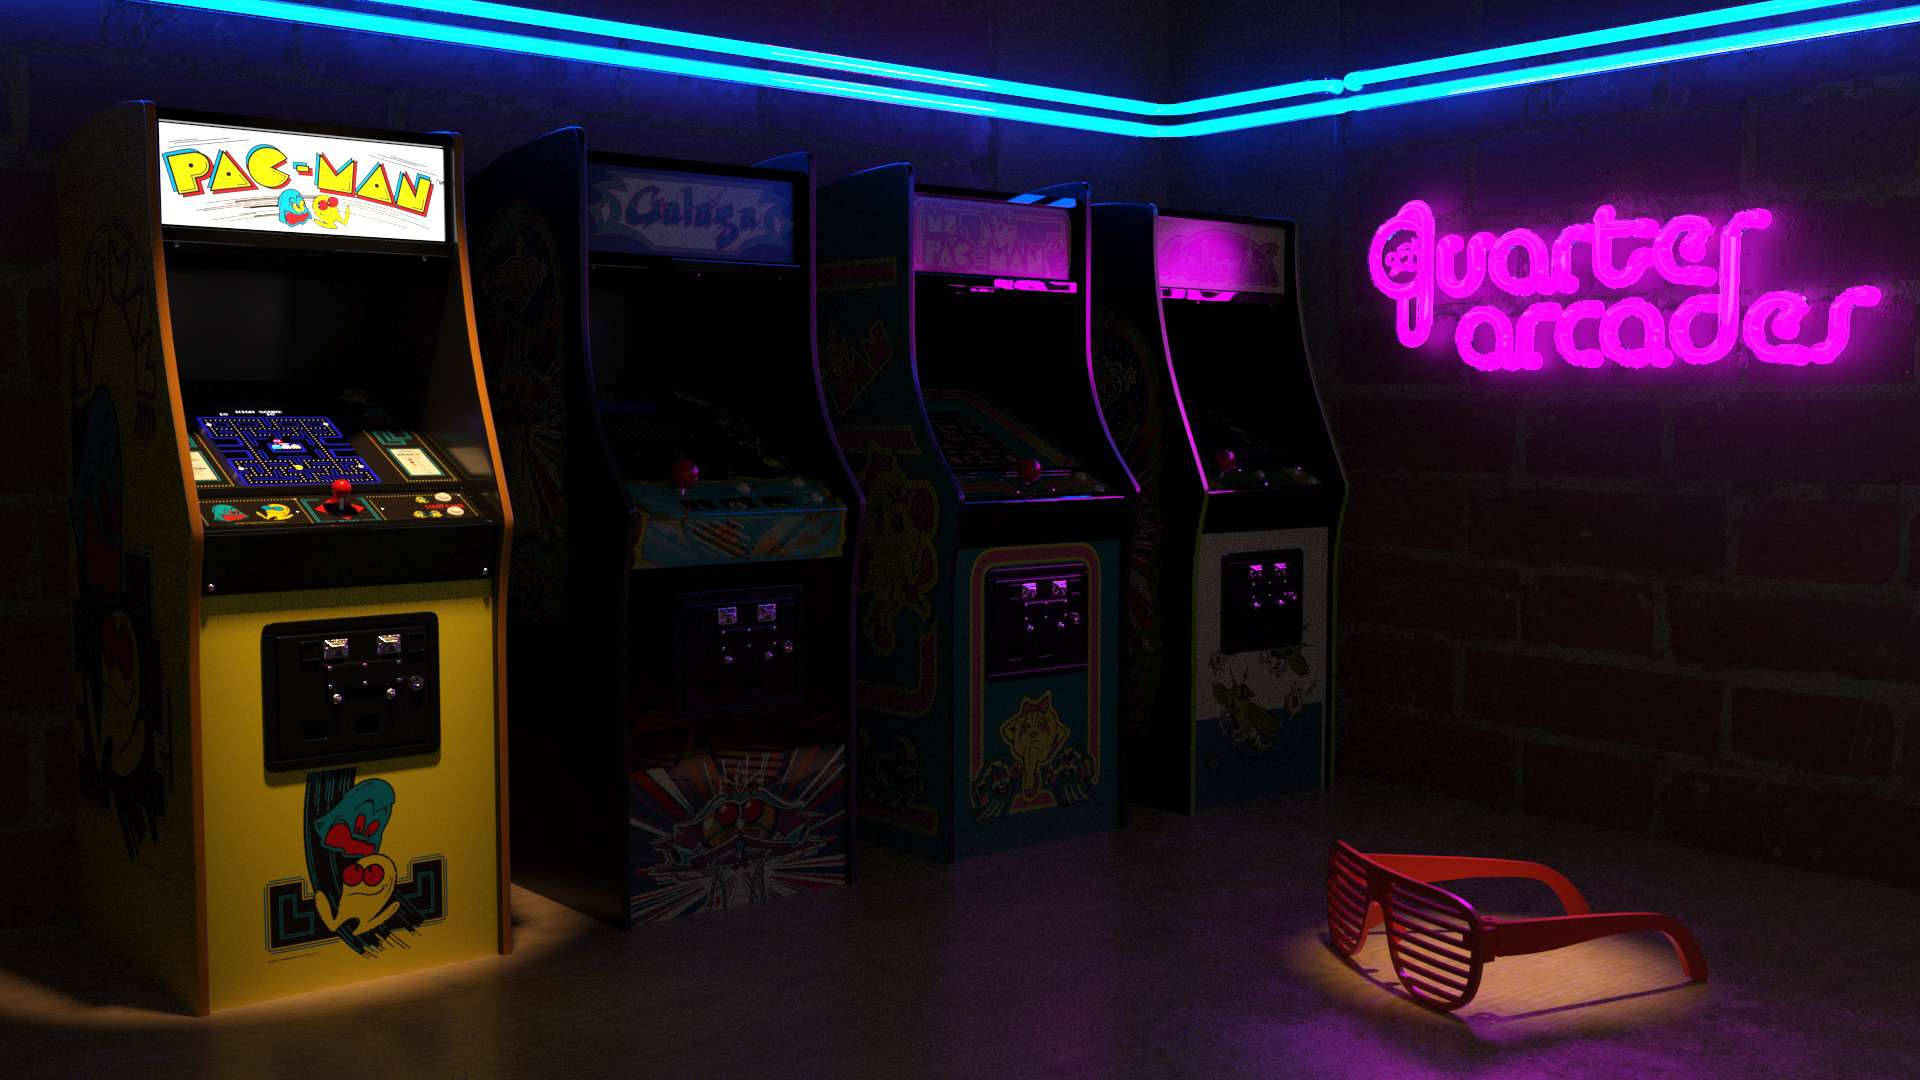 Erlebensie Die Freude An Klassischen Arcade-spielen Wieder! Wallpaper